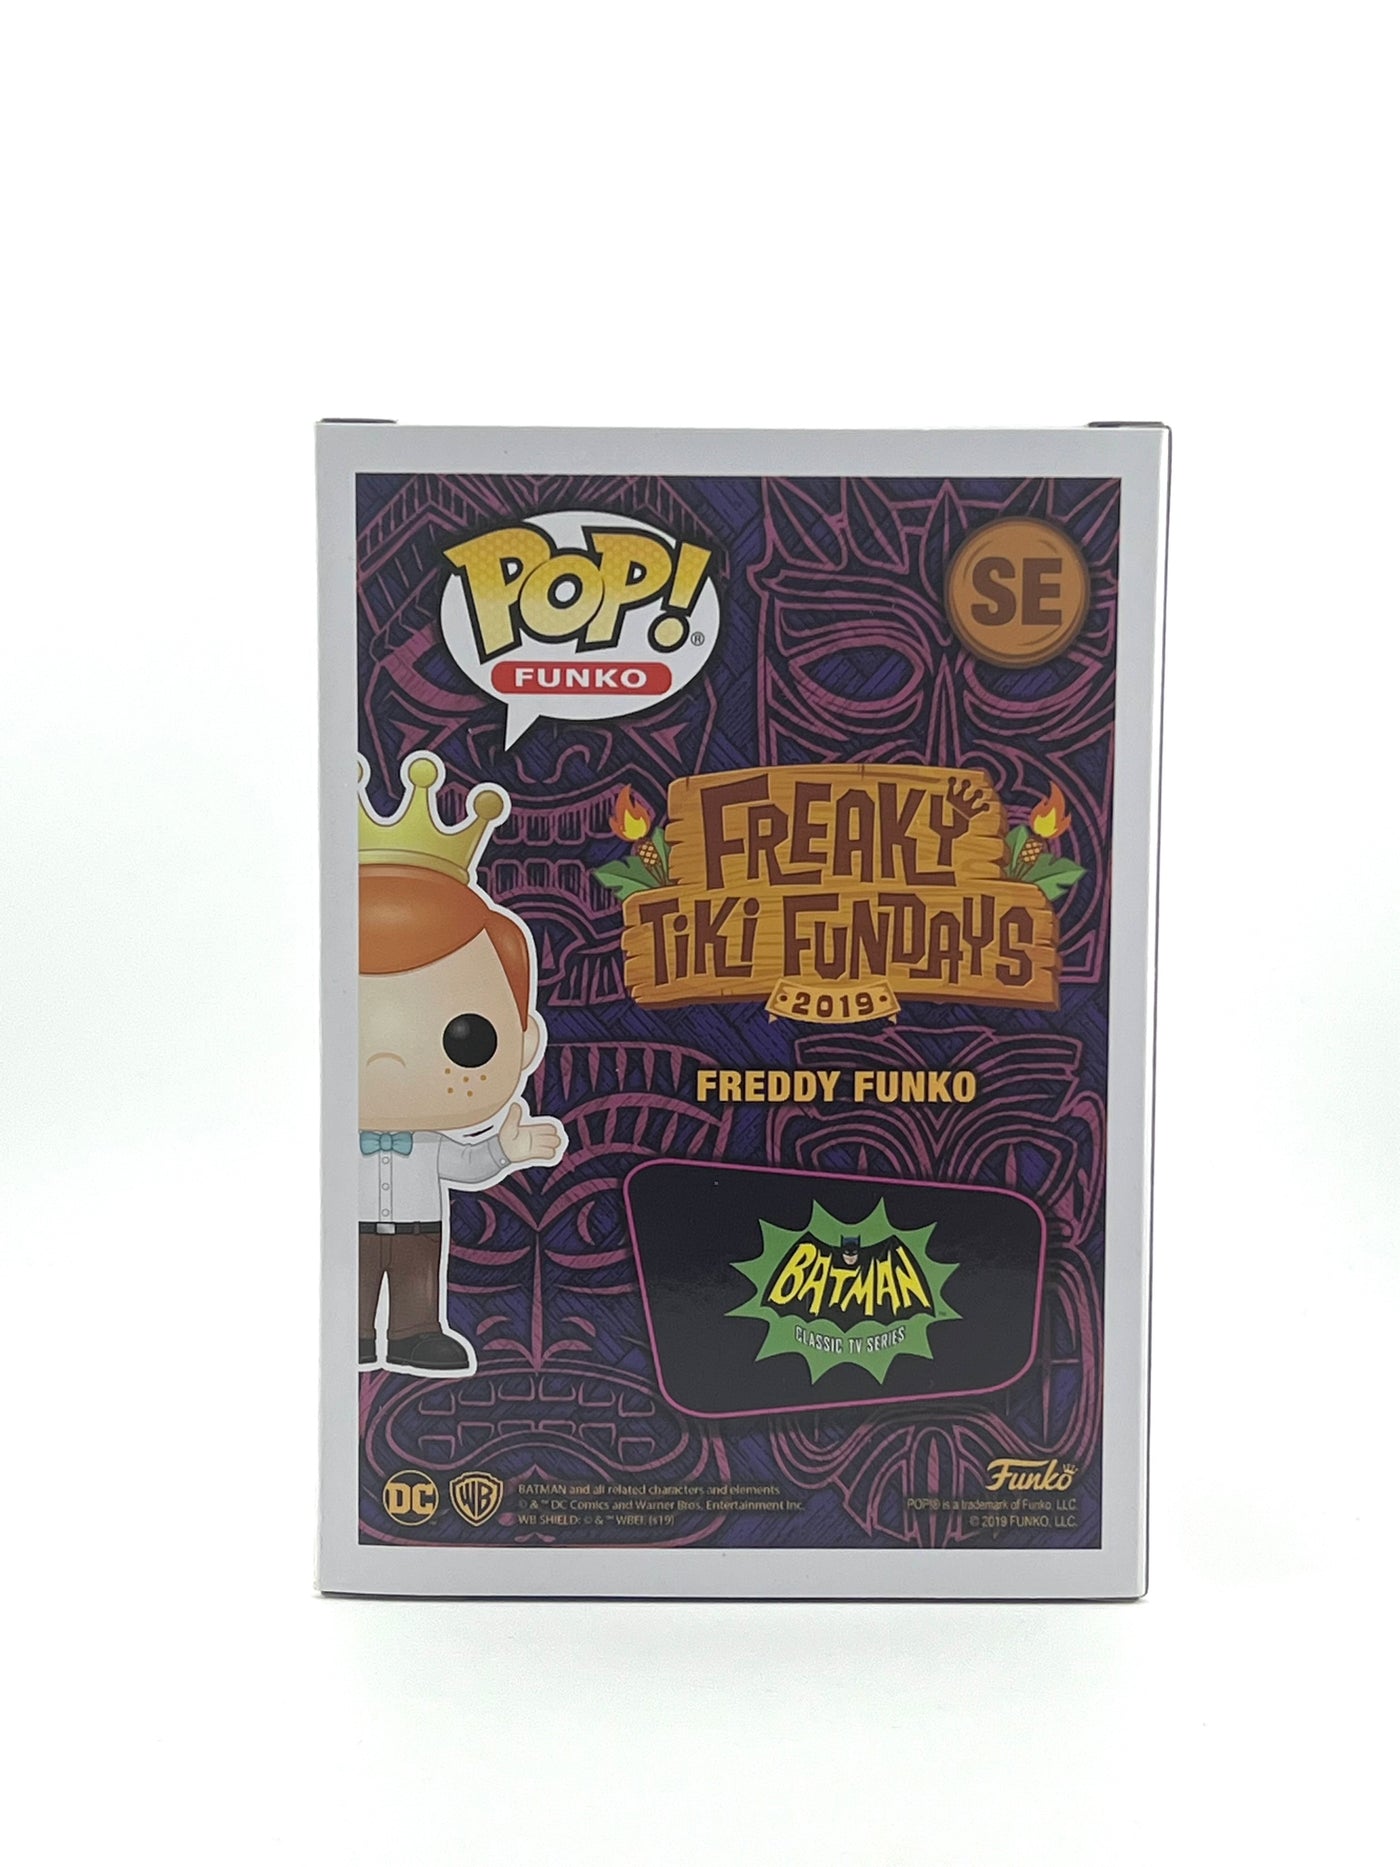 Funko pop! Freddy funko Surf’s up Batman (box of fun 5,000 pcs)